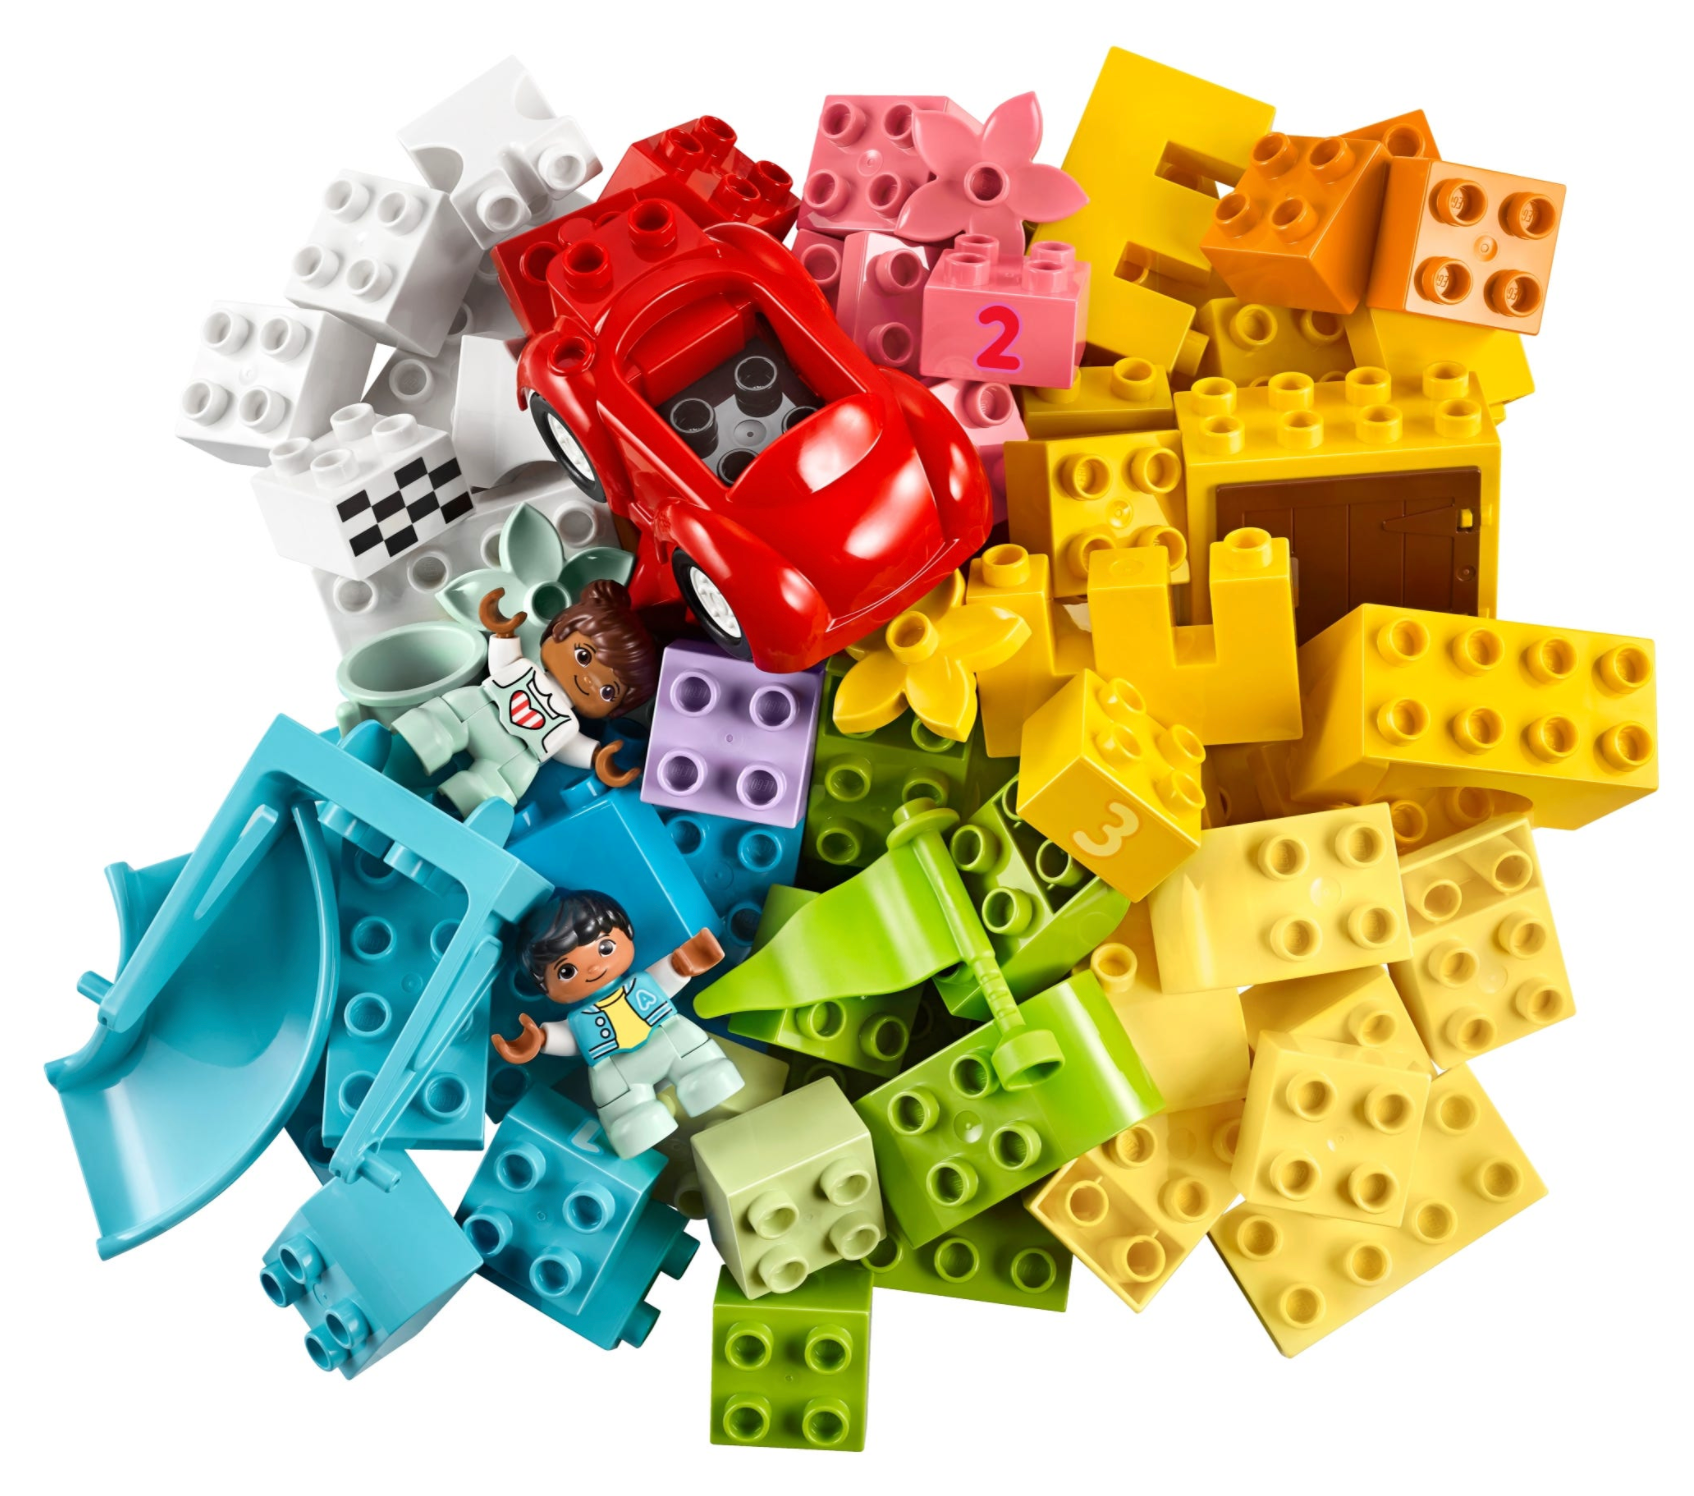 LEGO: DUPLO - Deluxe Brick Box